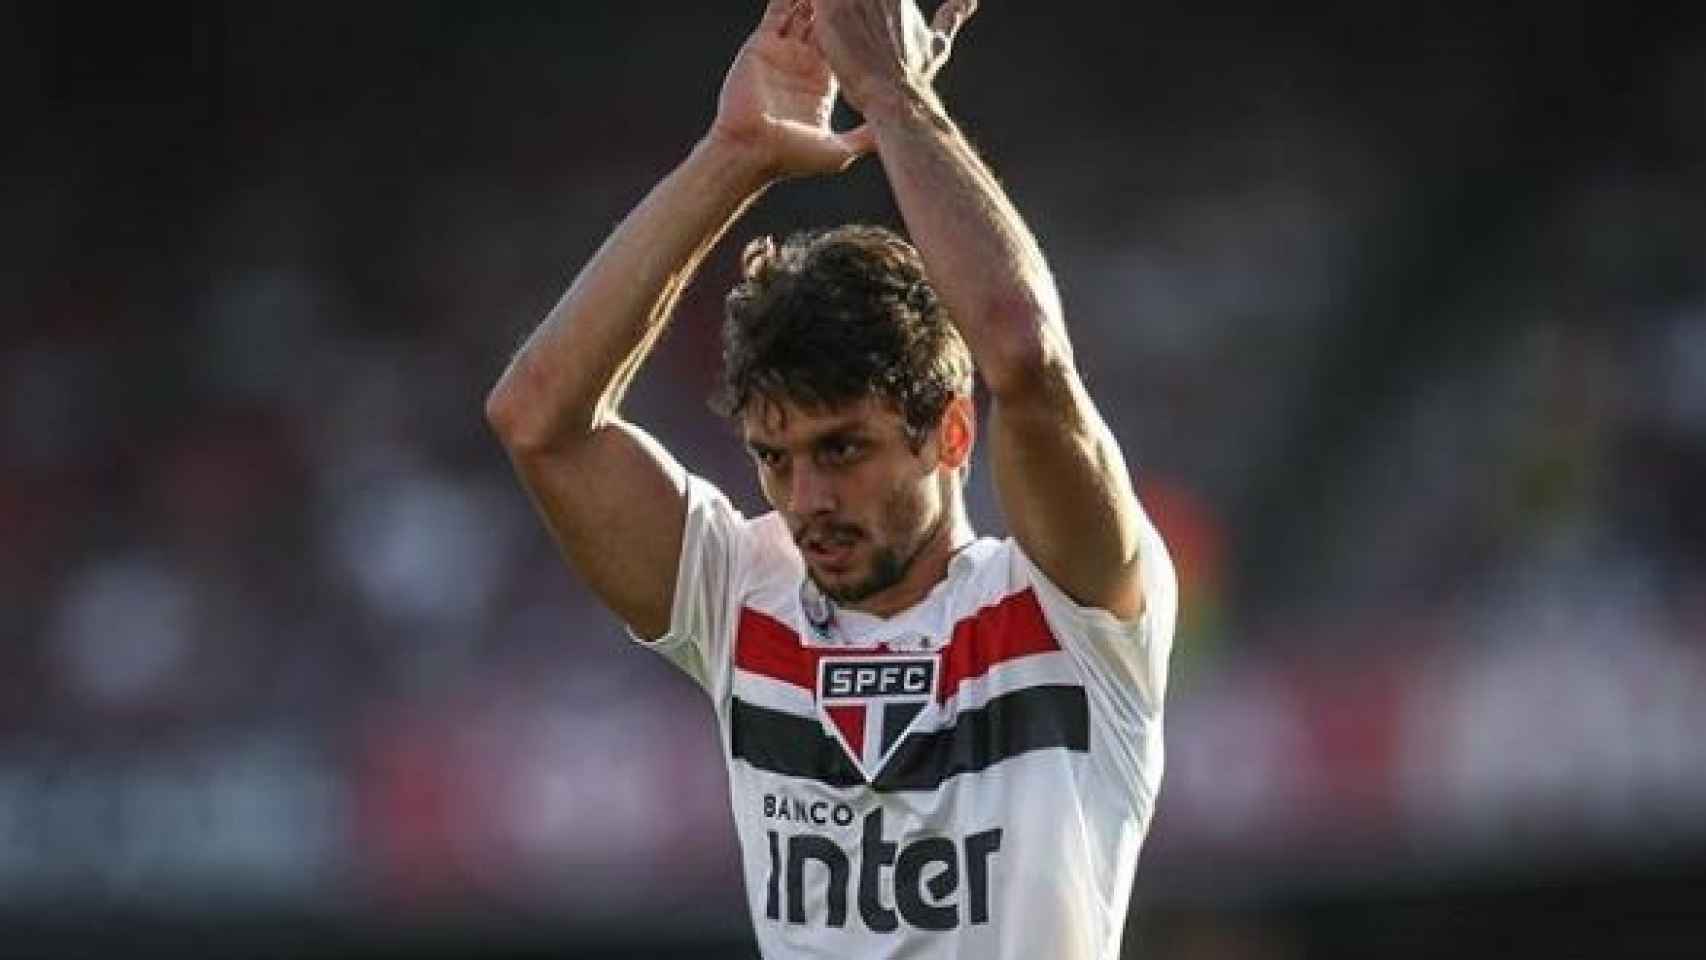 Rodrigo Caio, jugador del Sao Paulo